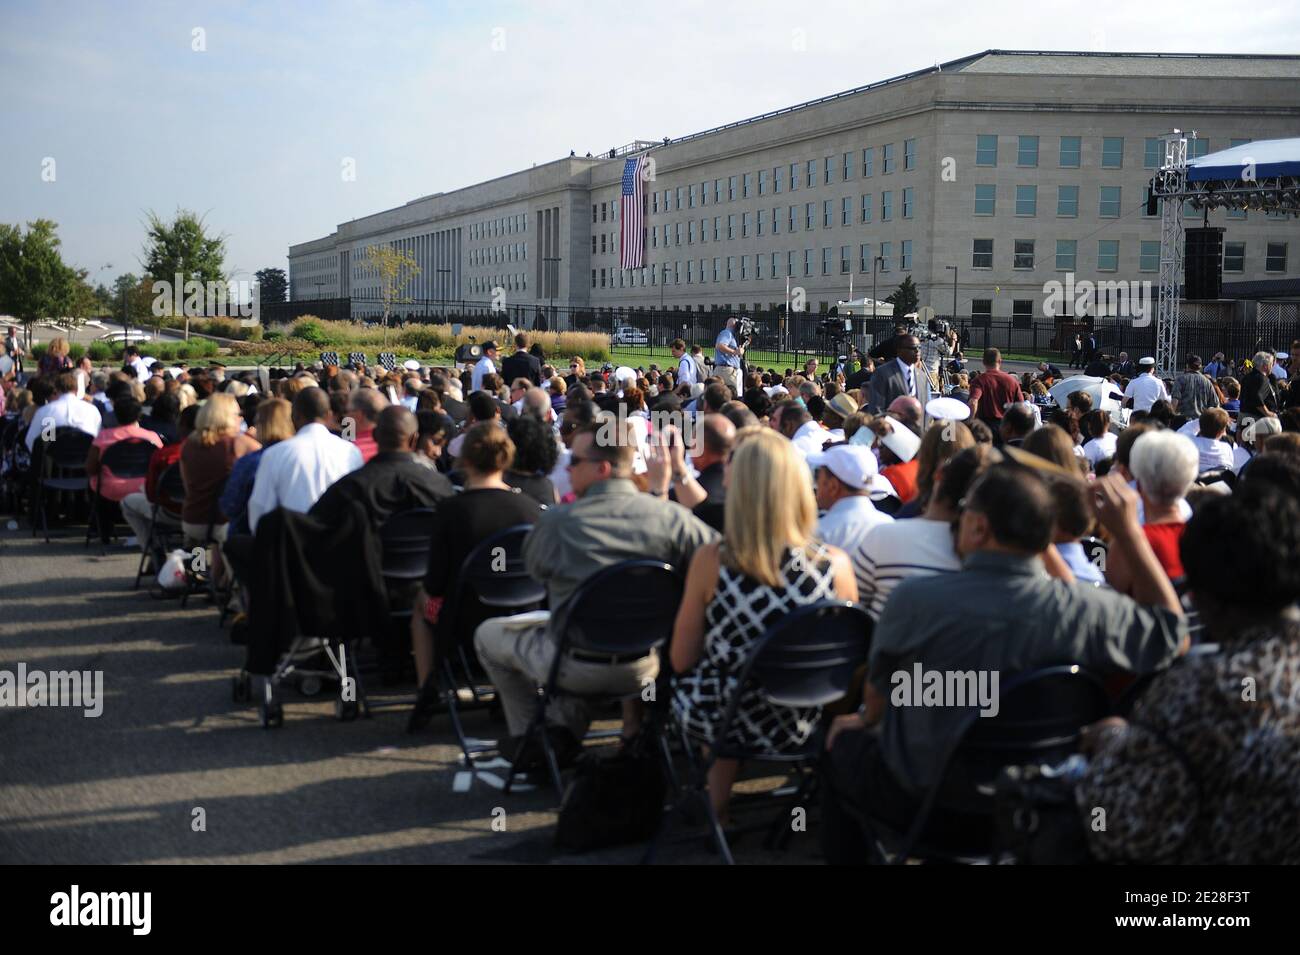 Il Pentagono commemora il decimo anniversario di 9/11 2001 attentati terroristici del 11 settembre 2011 ad Arlington, VA, USA. Foto di Olivier Douliery/ABACAPRESS.COM Foto Stock